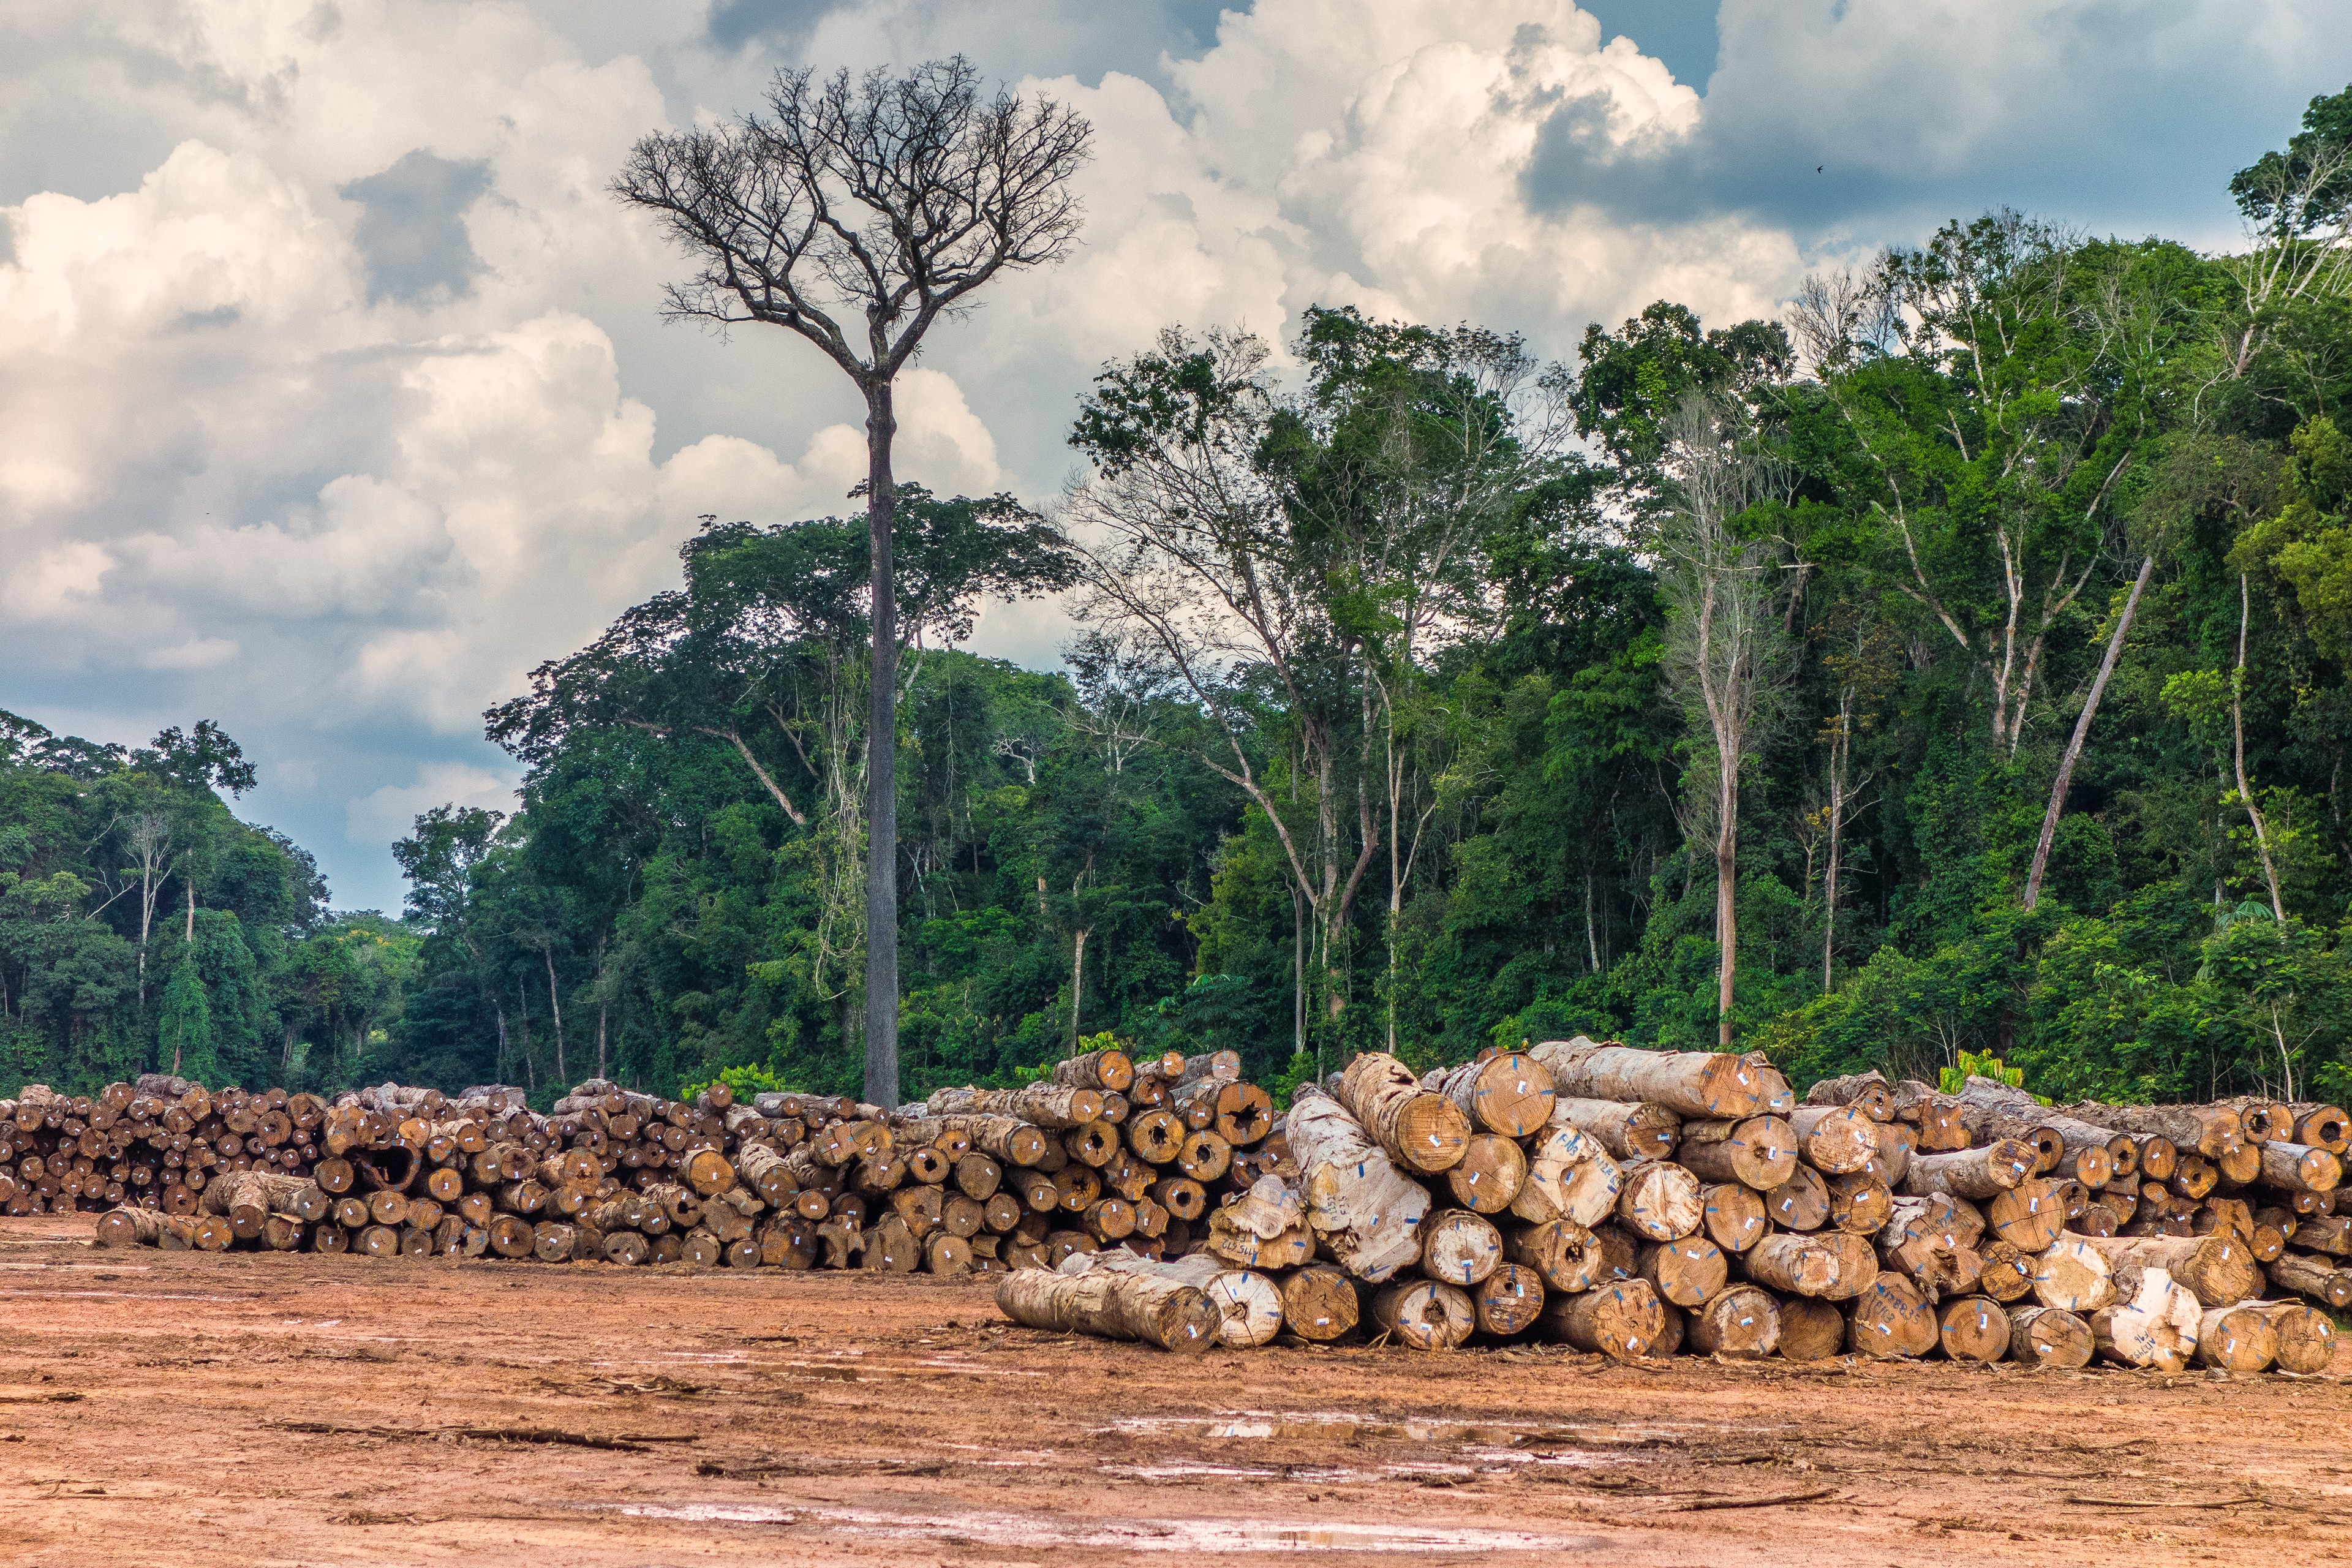 madeira-amazonia-desmatamento (Foto: Vicente Sampaio/Imaflora)